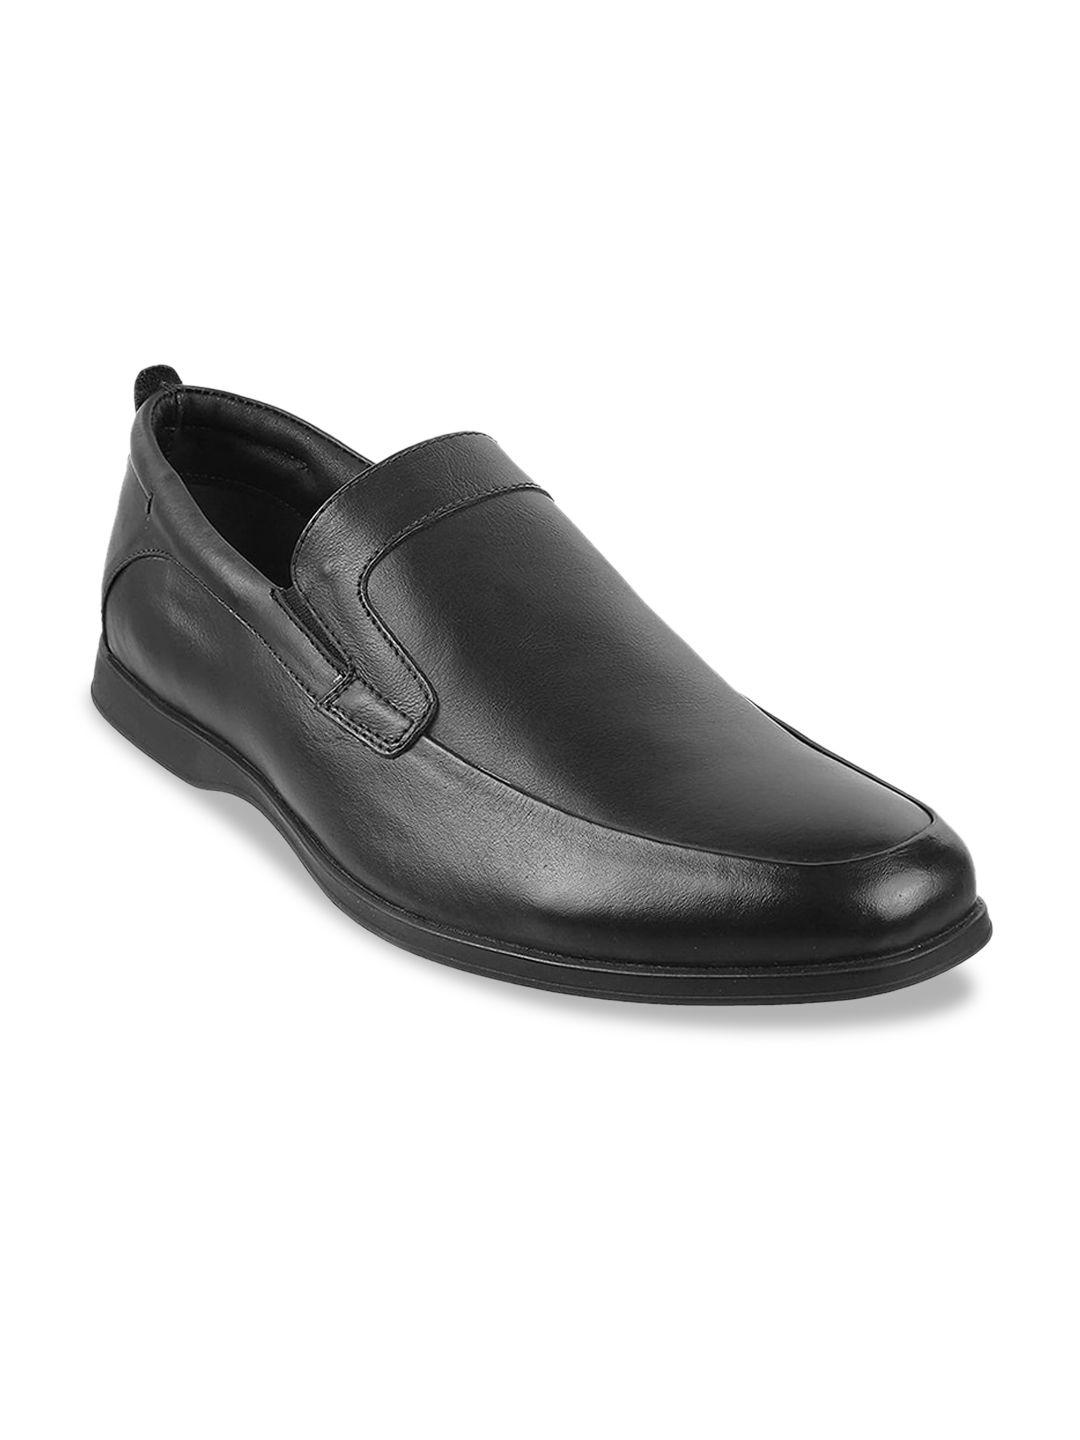 mochi men black solid leather formal slip-on shoe